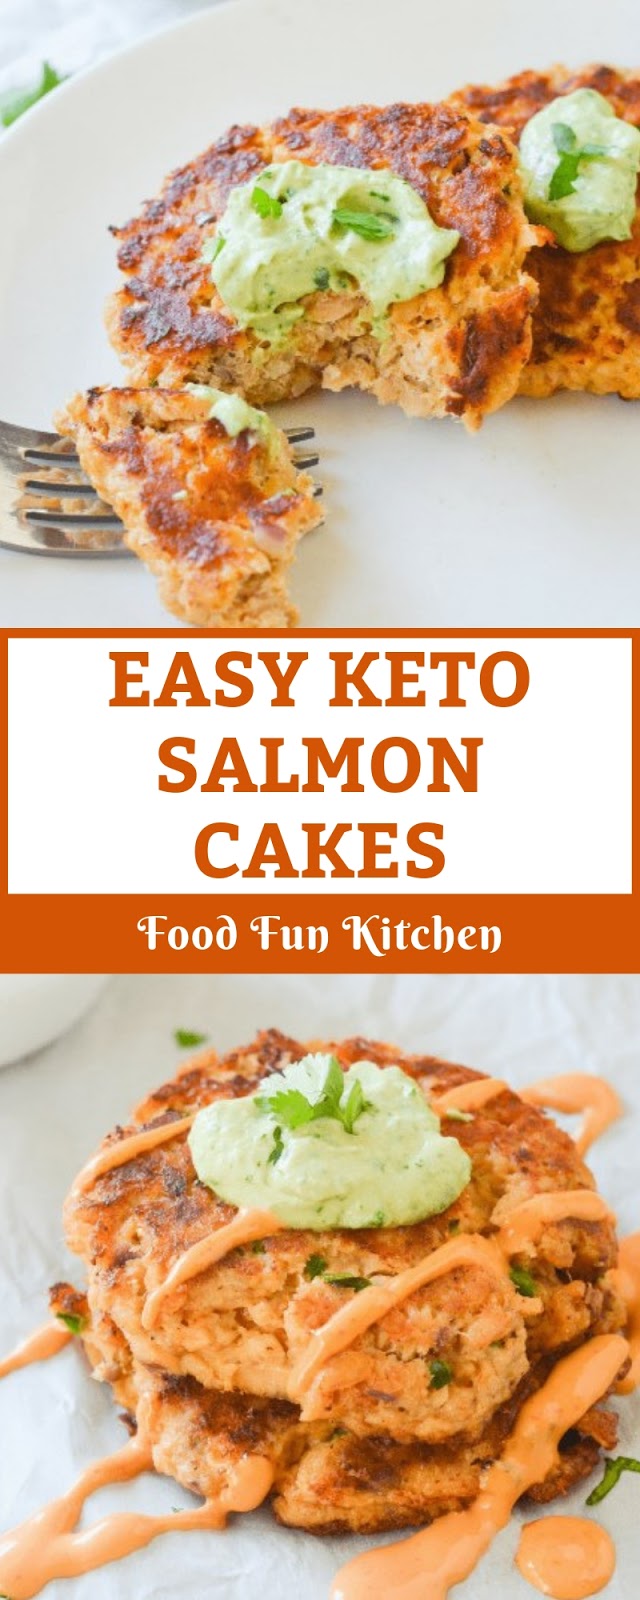 EASY KETO SALMON CAKES